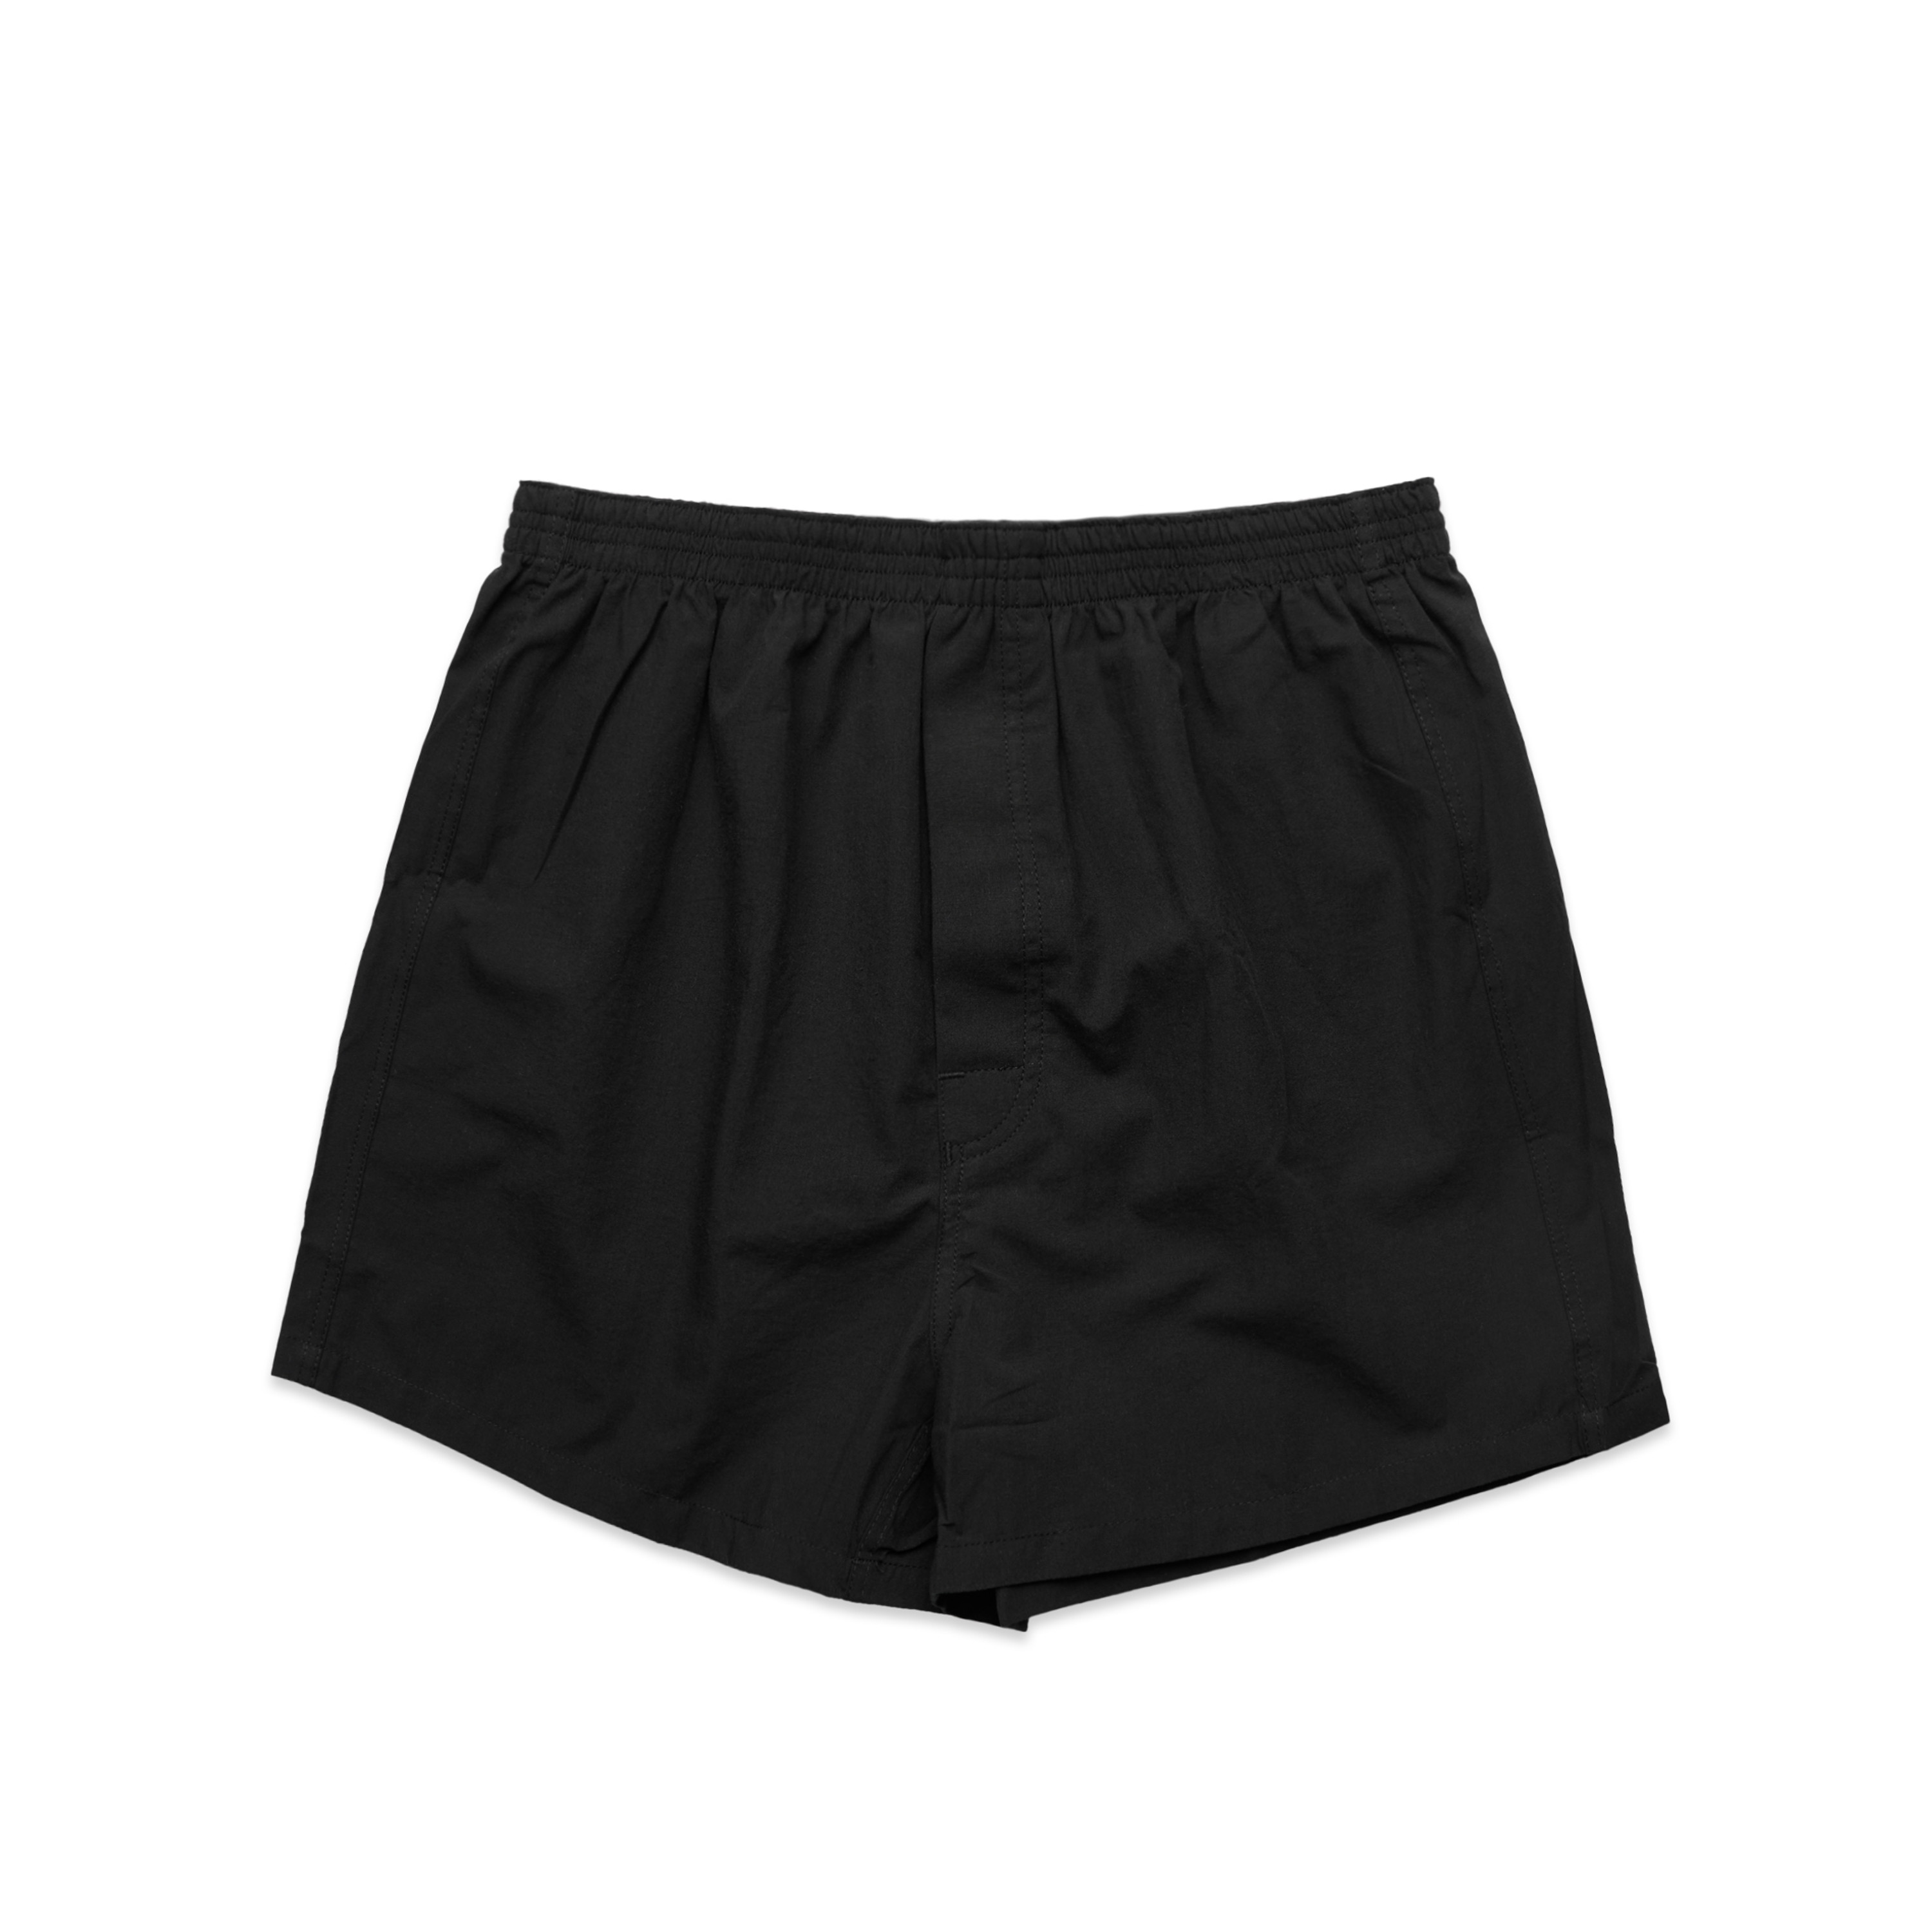 Mens Boxer Shorts - 1202 - AS Colour US